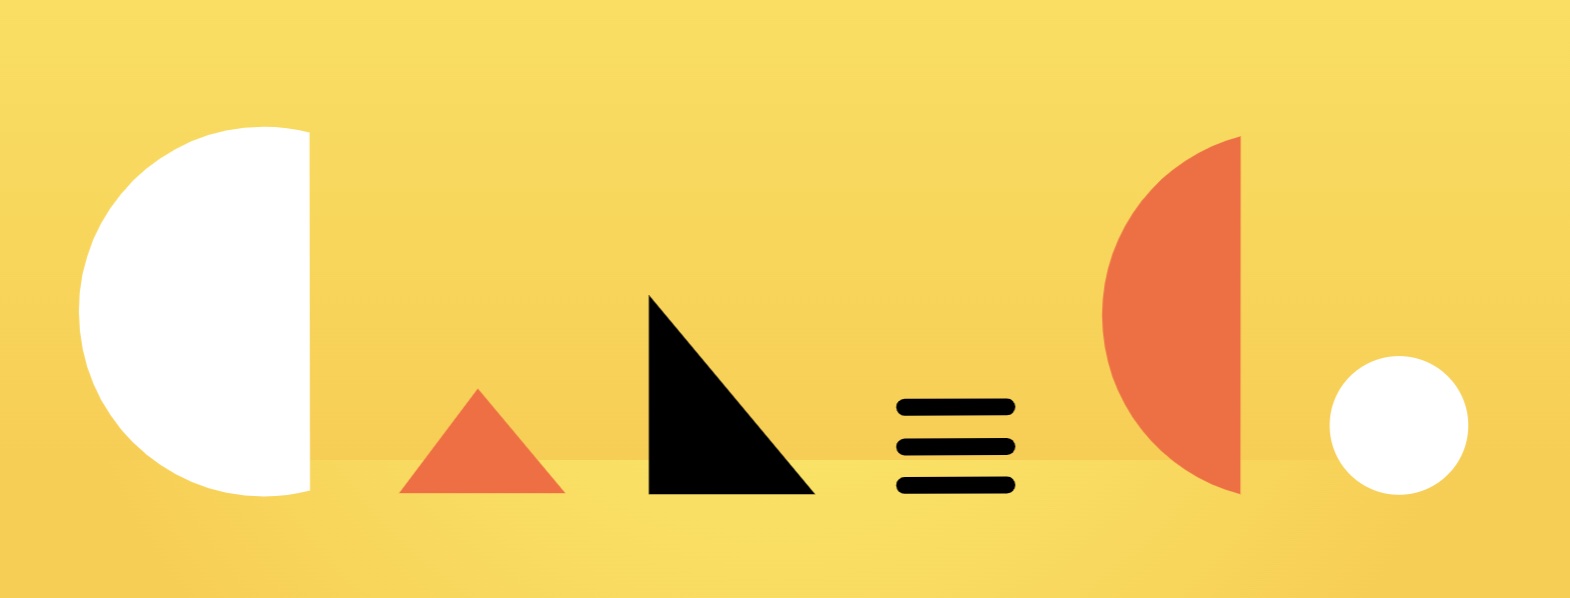 Caleco を綴った抽象的な形で構成された Caleco のロゴのイメージ。